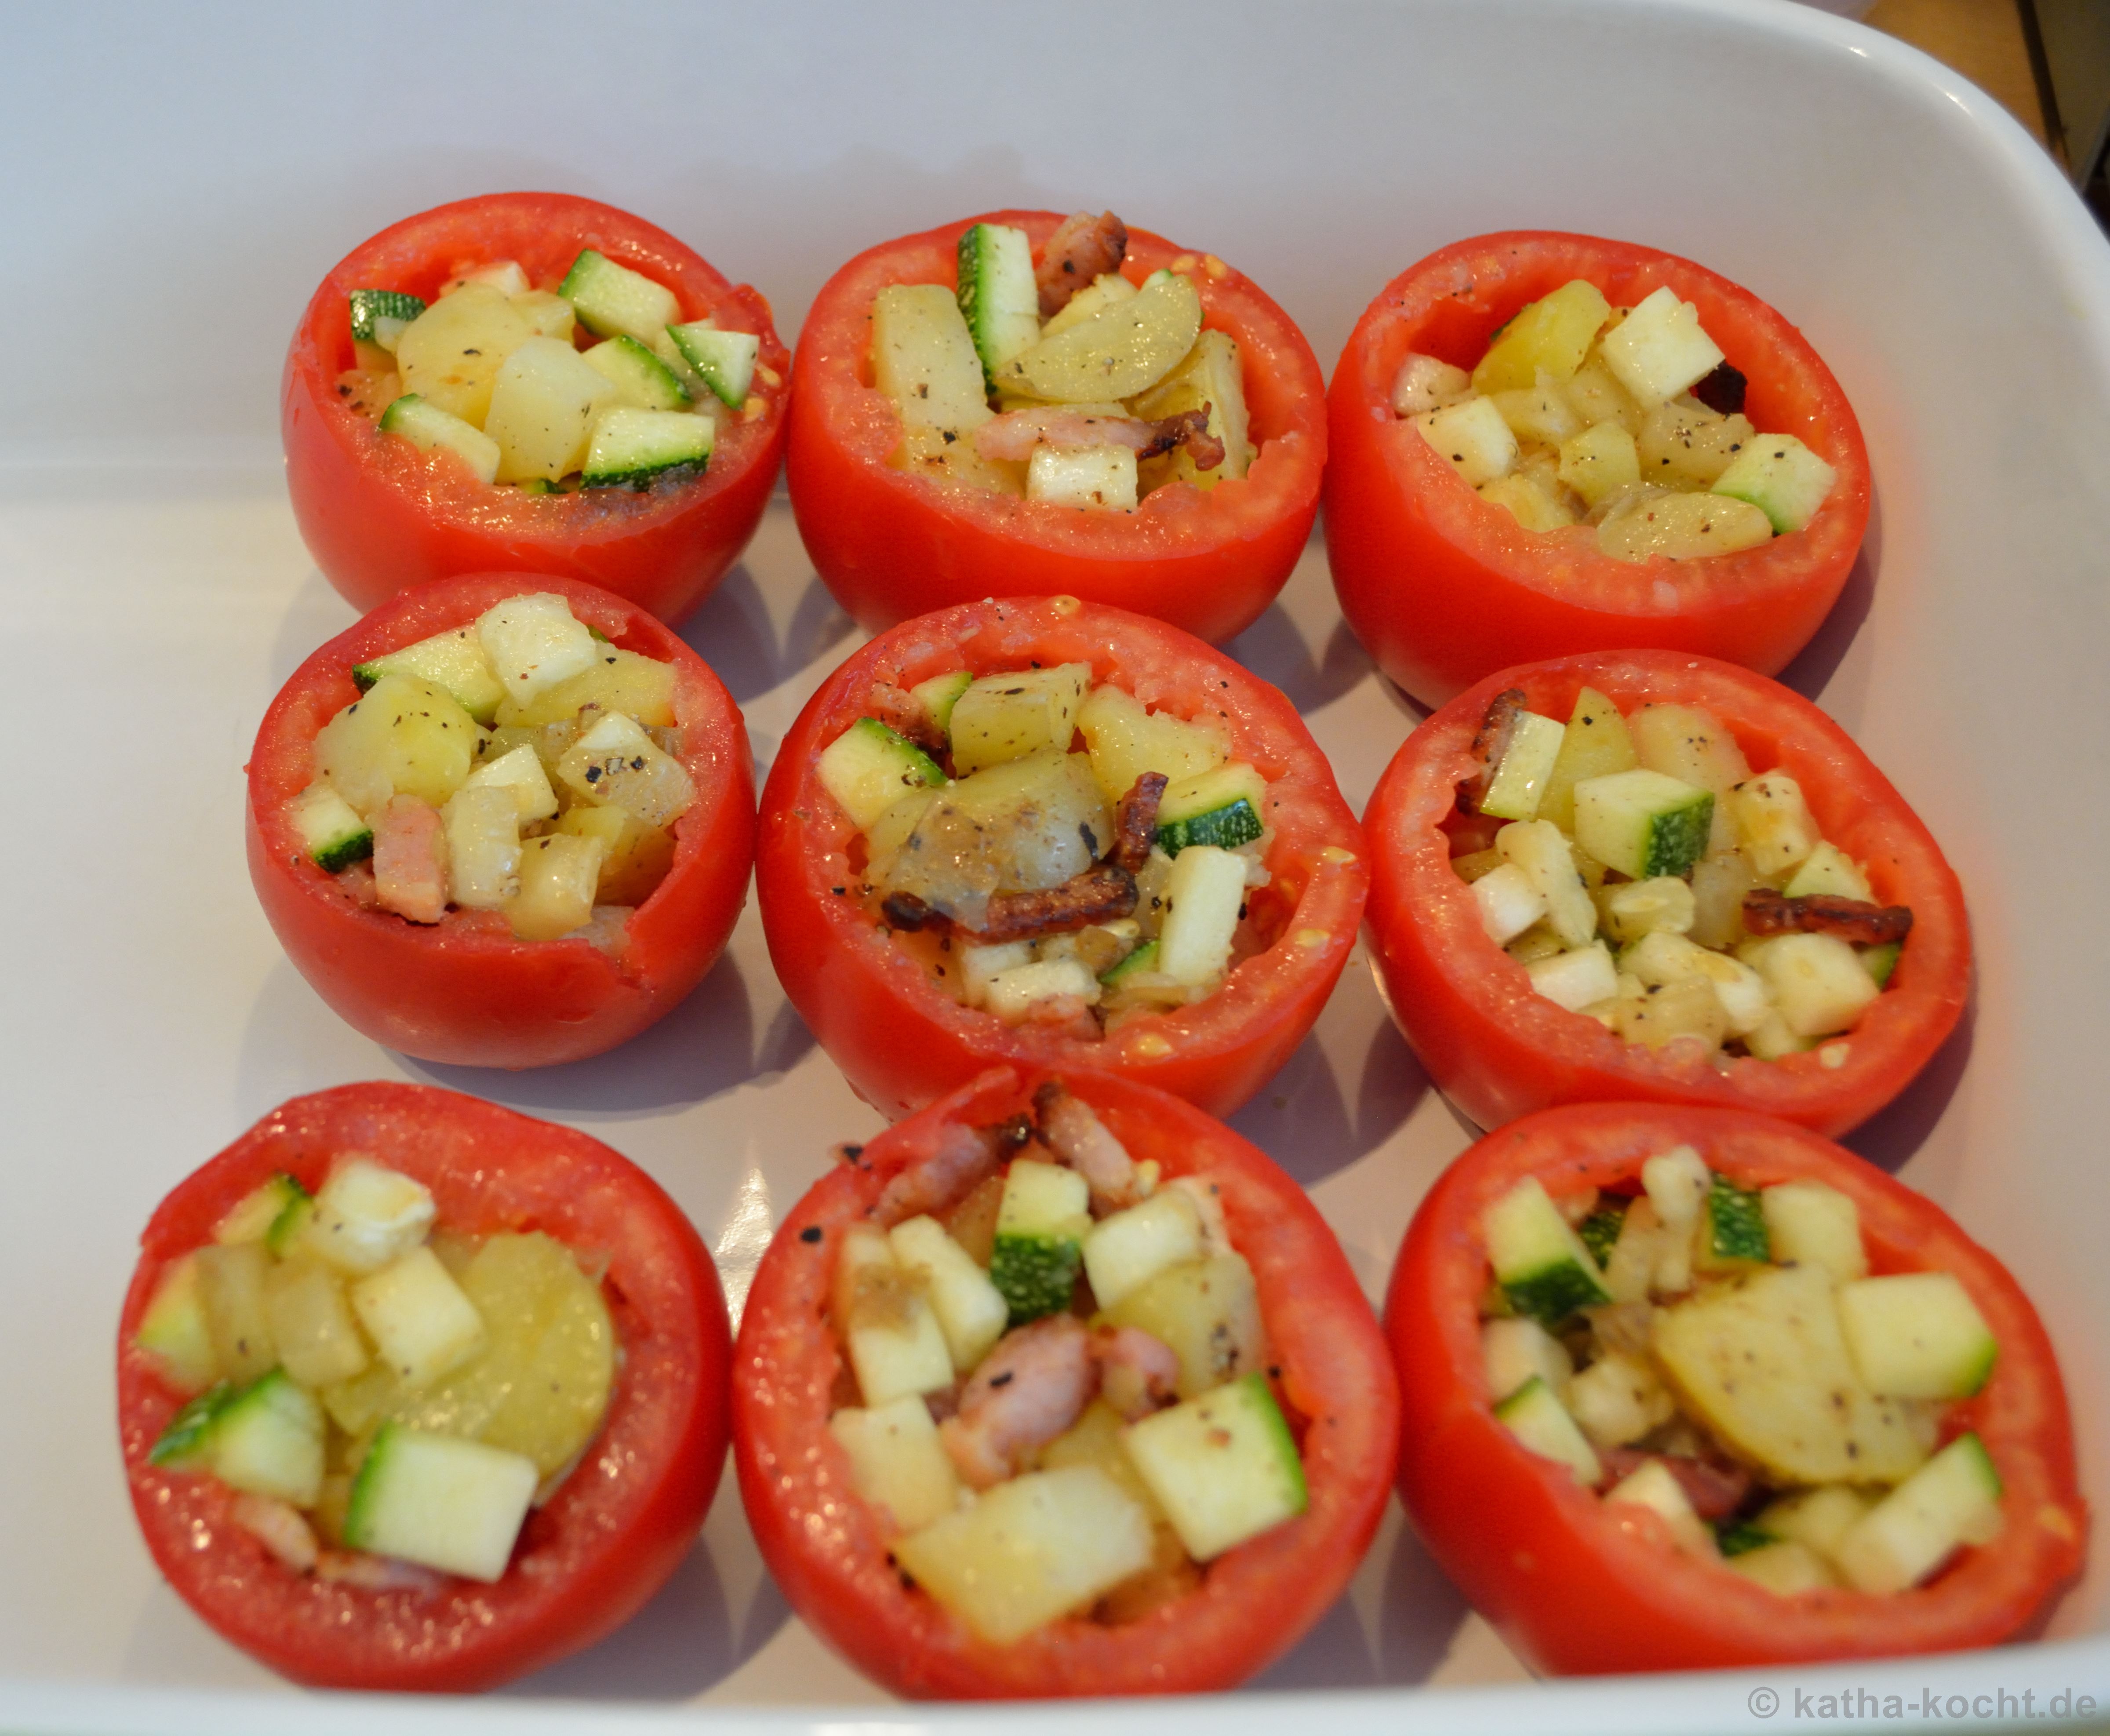 Tapas - Gefüllte Tomaten mit Kartoffel, Zucchini und Speck - Katha-kocht!